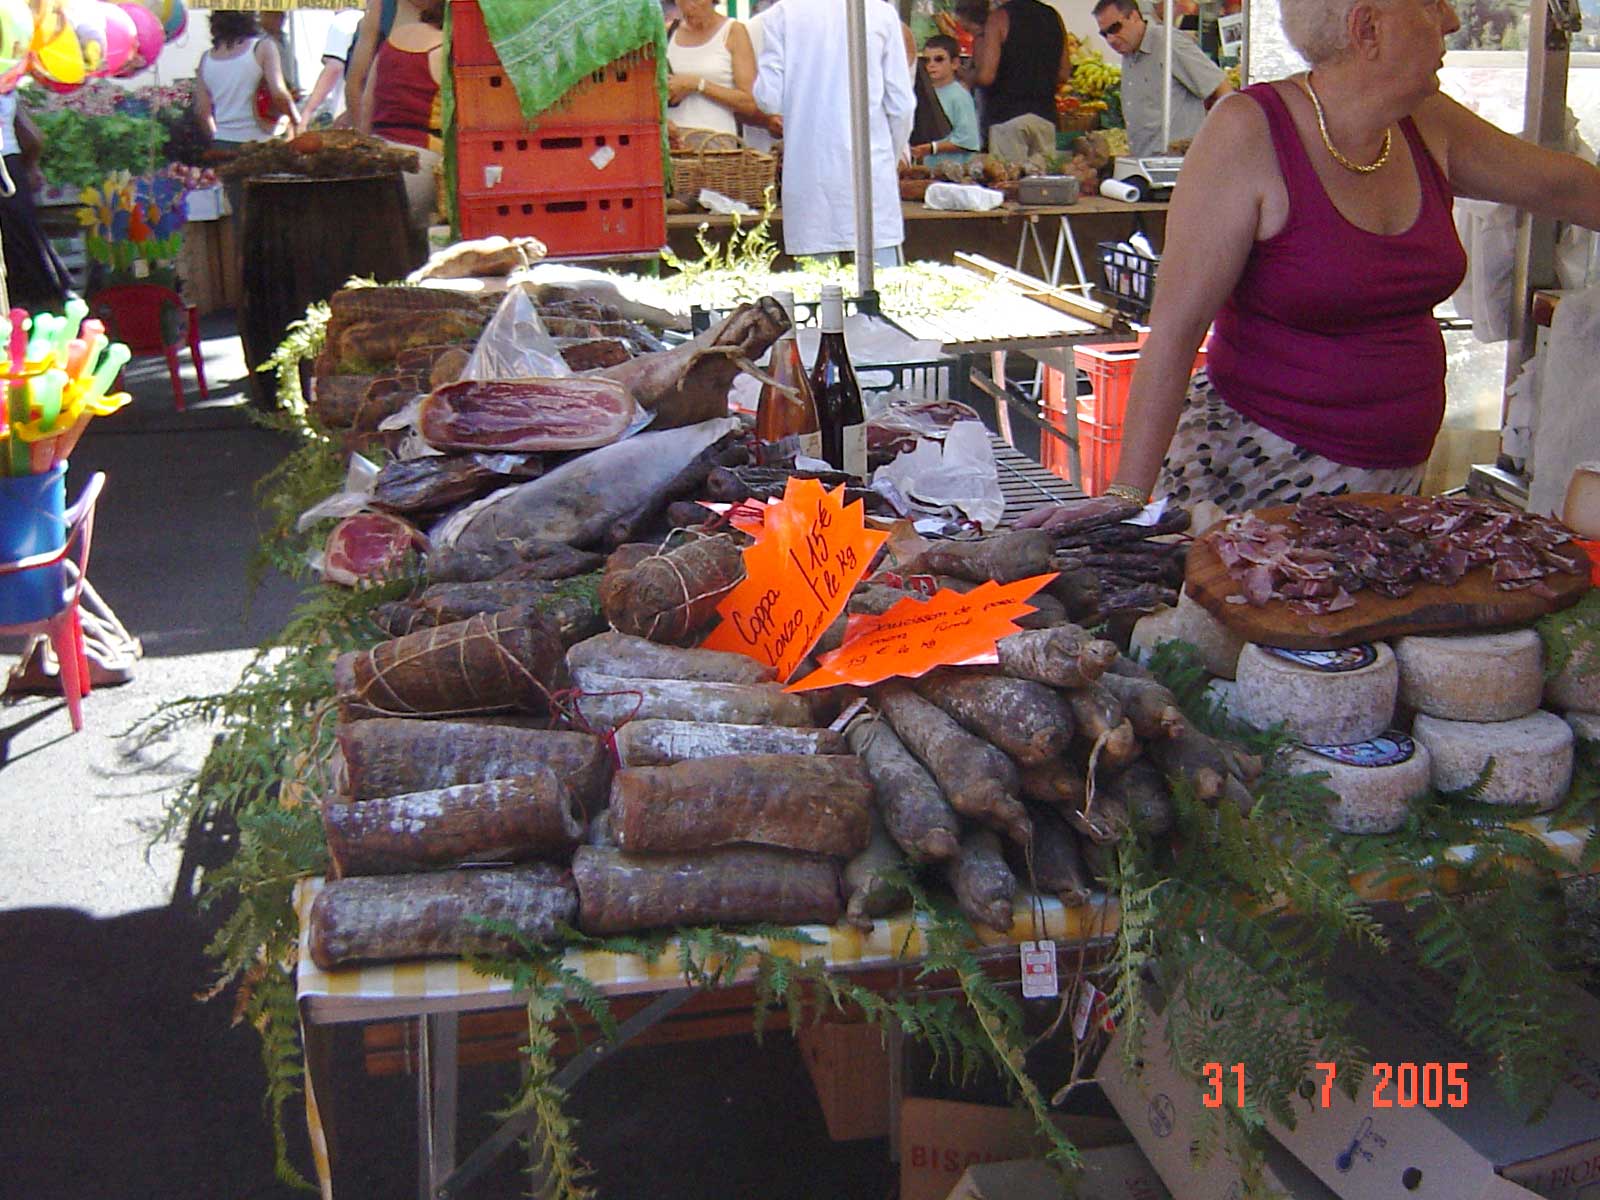 Markt in Ajaccio